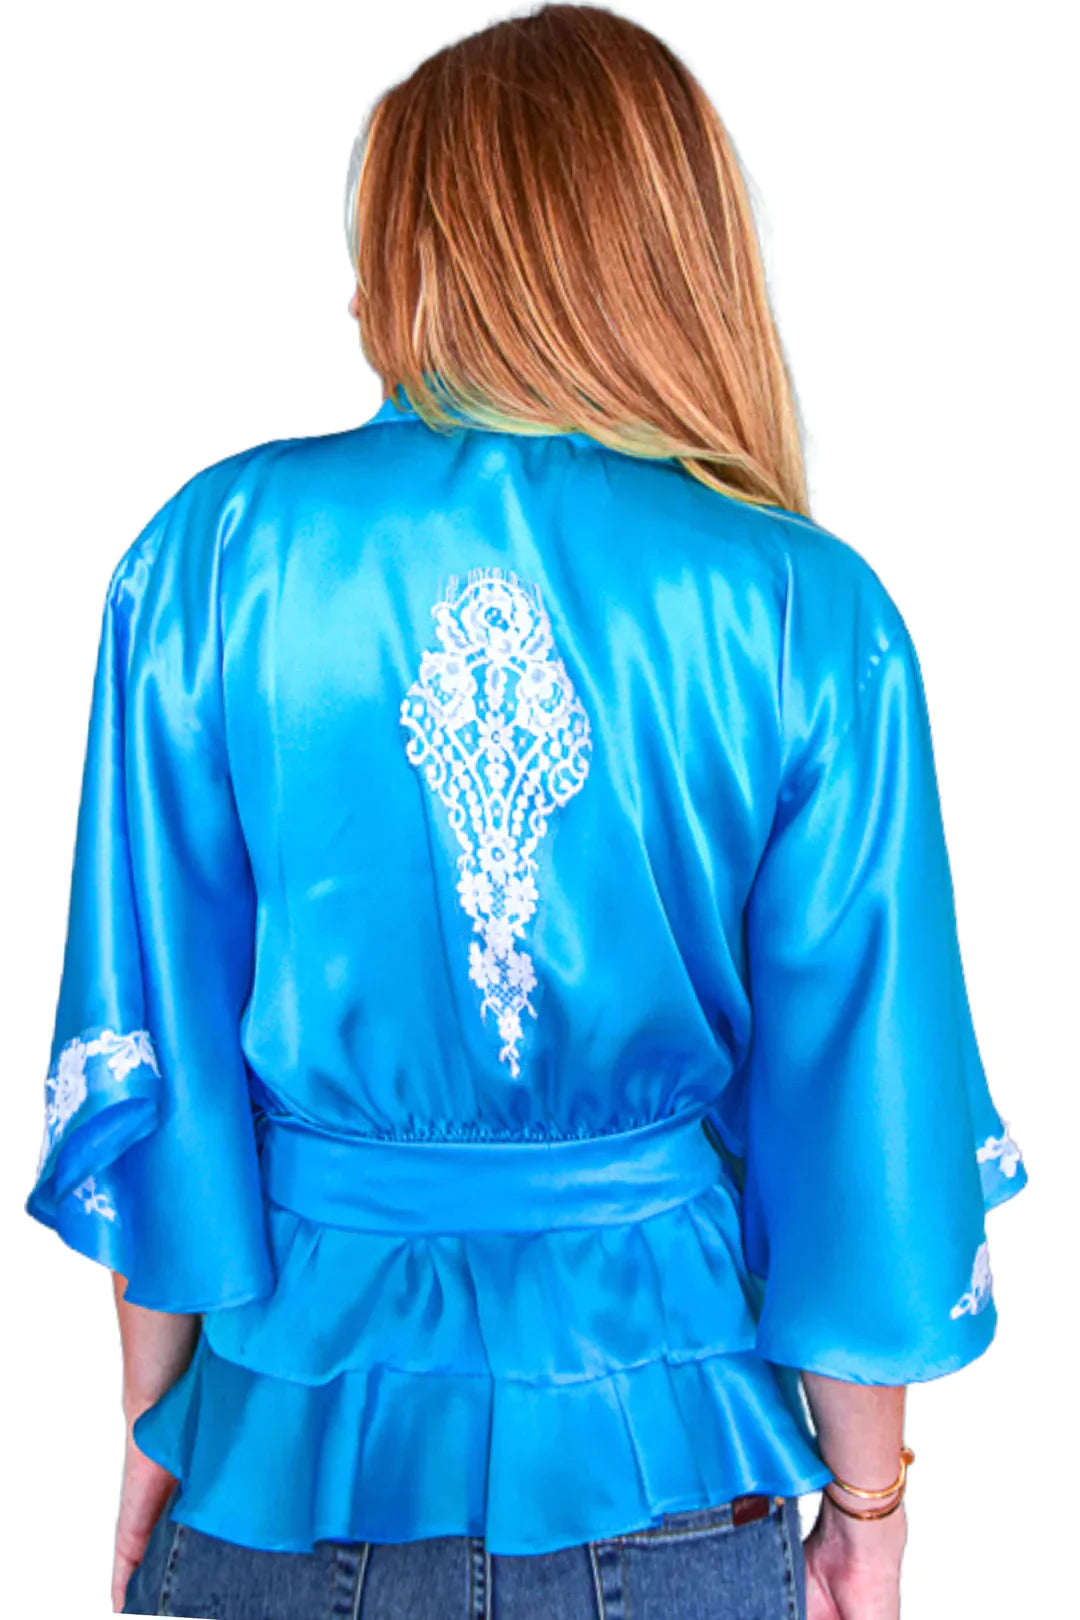 Vanita Rosa Nikos Silk Kimono Top - Premium Shirts & Tops from Marina St Barth - Just $699! Shop now at Marina St Barth